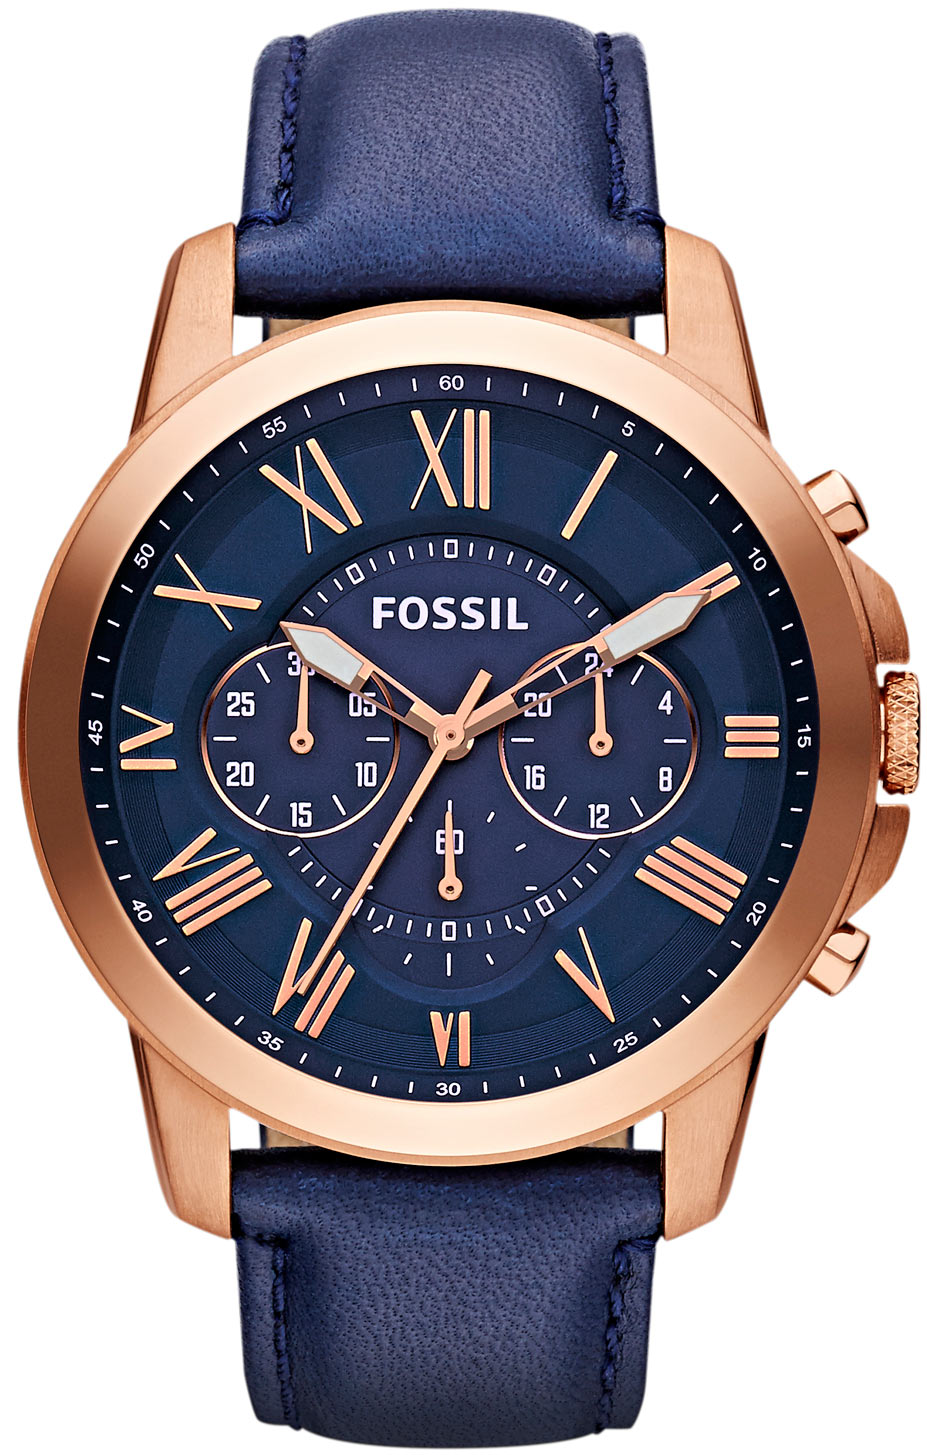 Fossil FS4835 - GRANT Watch • Watchard.com